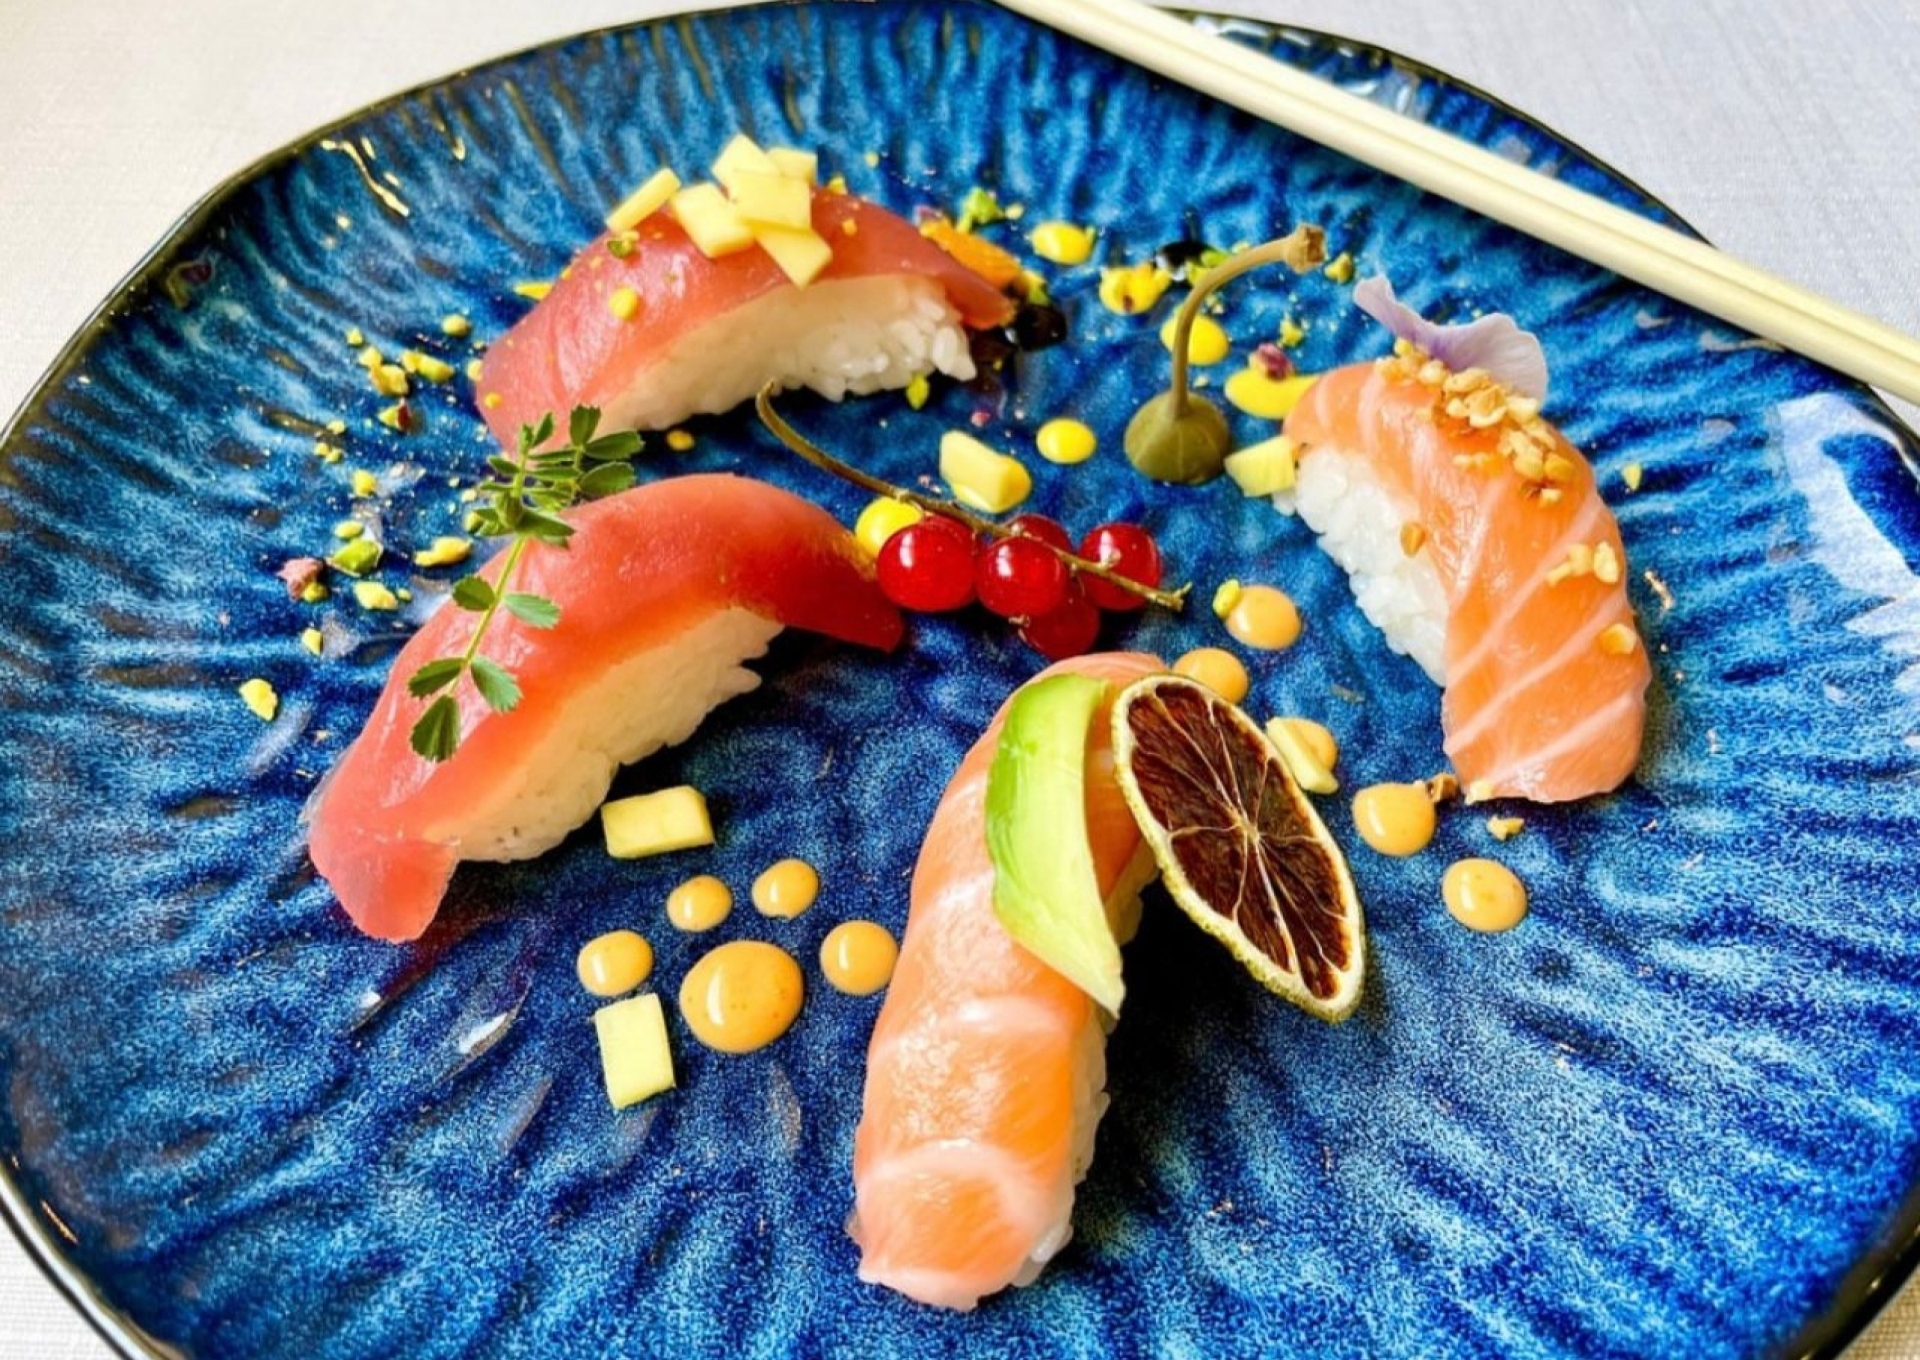 Al Ristorante Miyabi puoi gustare sushi e specialità giapponesi all you can eat o da asporto con il praticissimo servizio take away